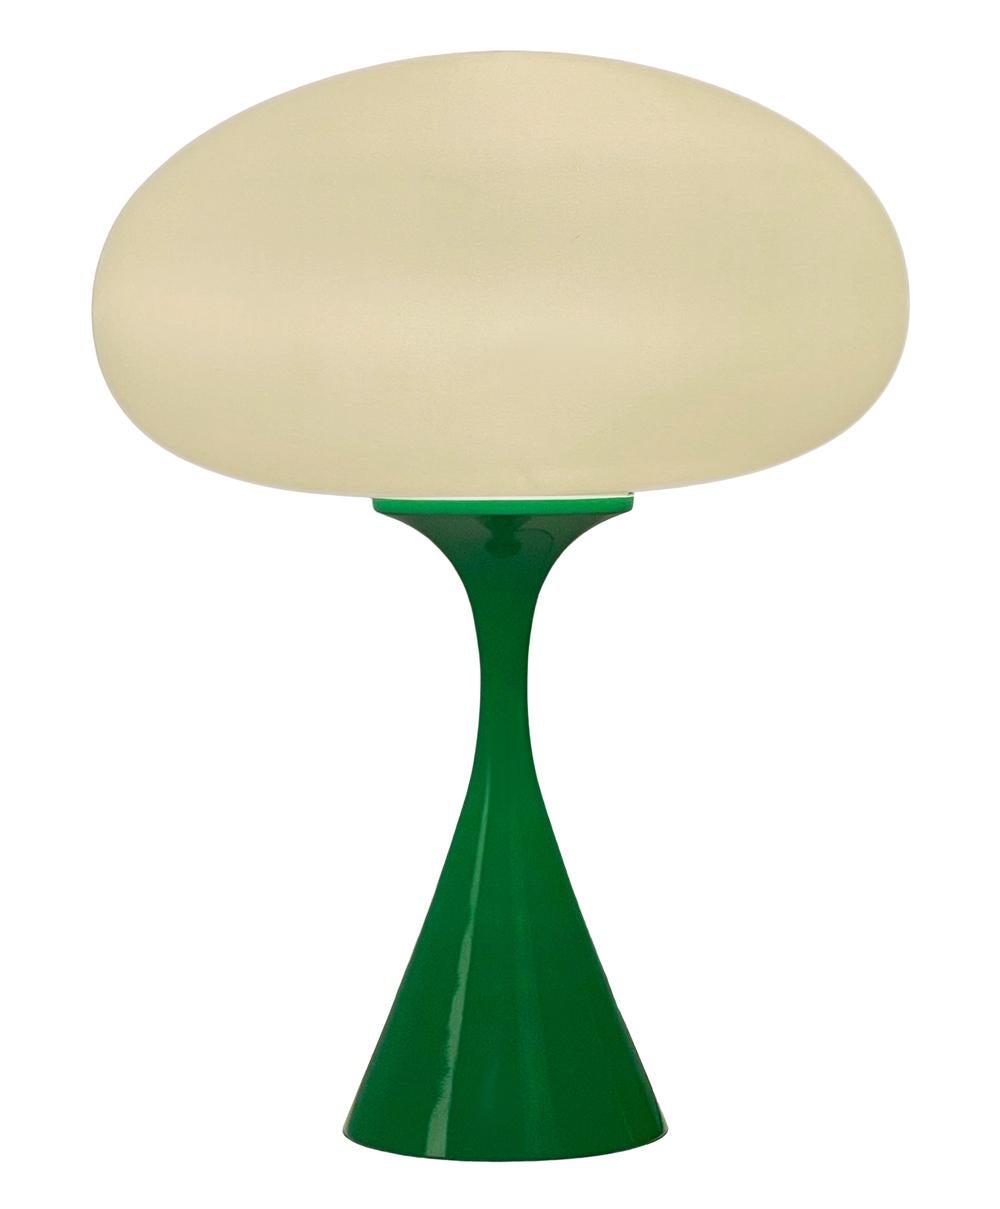 Une belle lampe de table en forme de champignon conique d'après Laurel Lamp Company. La lampe comporte une base en aluminium moulé avec un revêtement en poudre vert et un abat-jour en verre dépoli soufflé à la bouche.